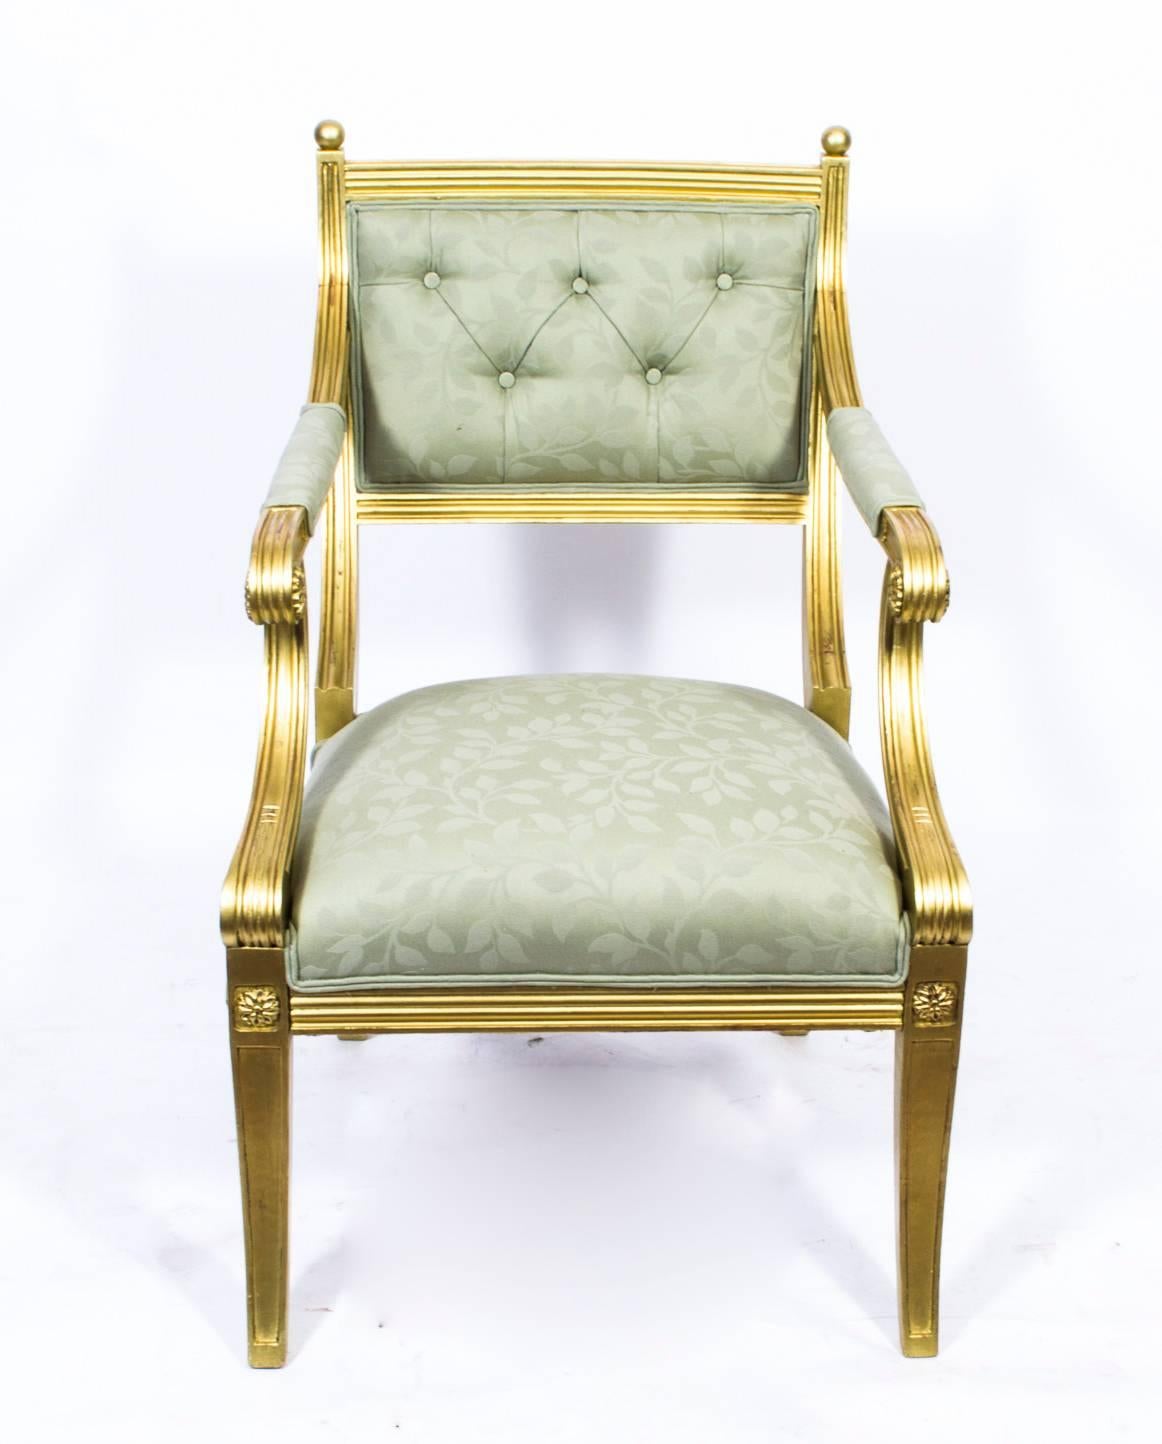 Dies ist ein wunderschöner antiker Armlehnstuhl aus Goldholz im fabelhaften Regency-Stil, der aus dem frühen 20. 

Der vergoldete Stuhl ist wunderschön geschnitzt, mit geriffelten Linien und Medaillon-Plaketten. Die Arme und Stützen verlaufen in